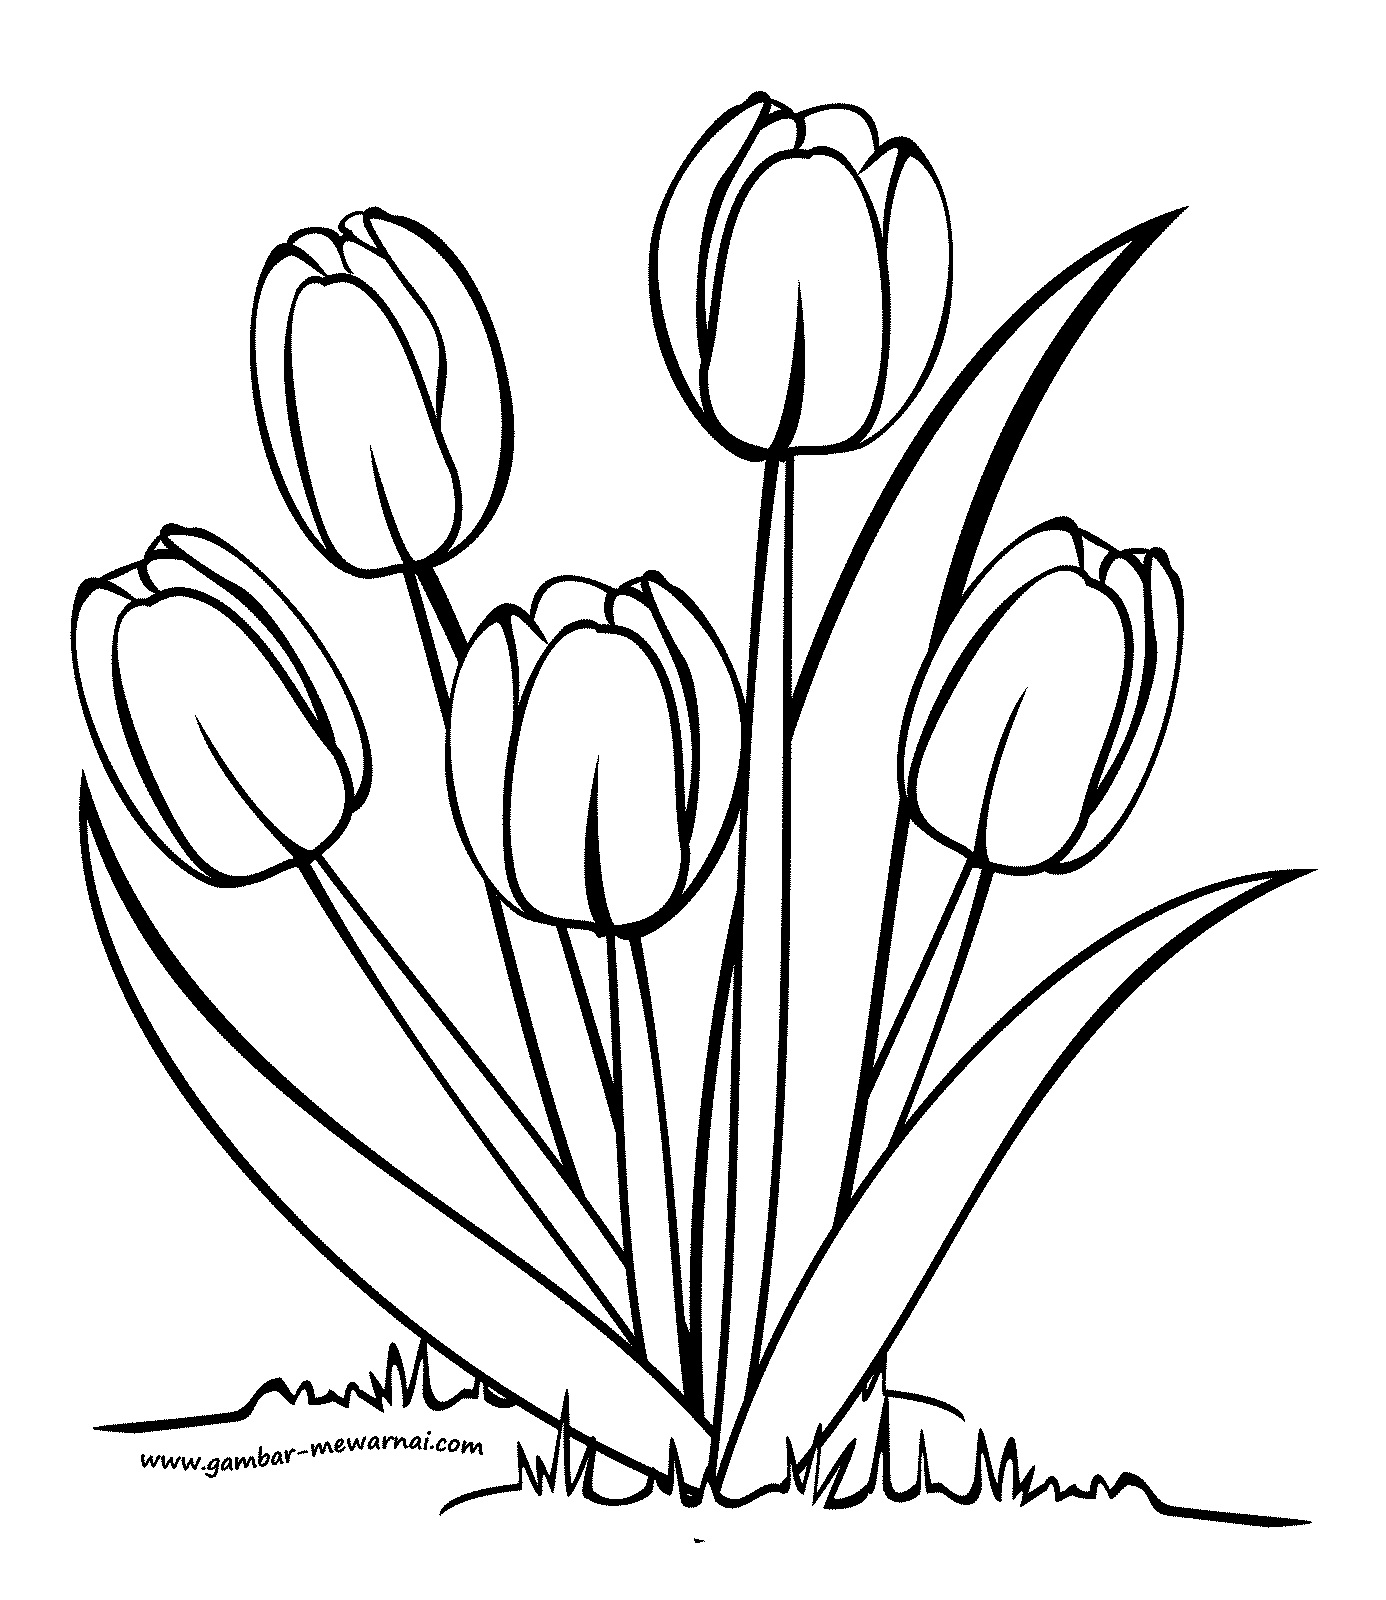 Kumpulan Sketsa Menggambar Bunga Tulip Sketsabaru